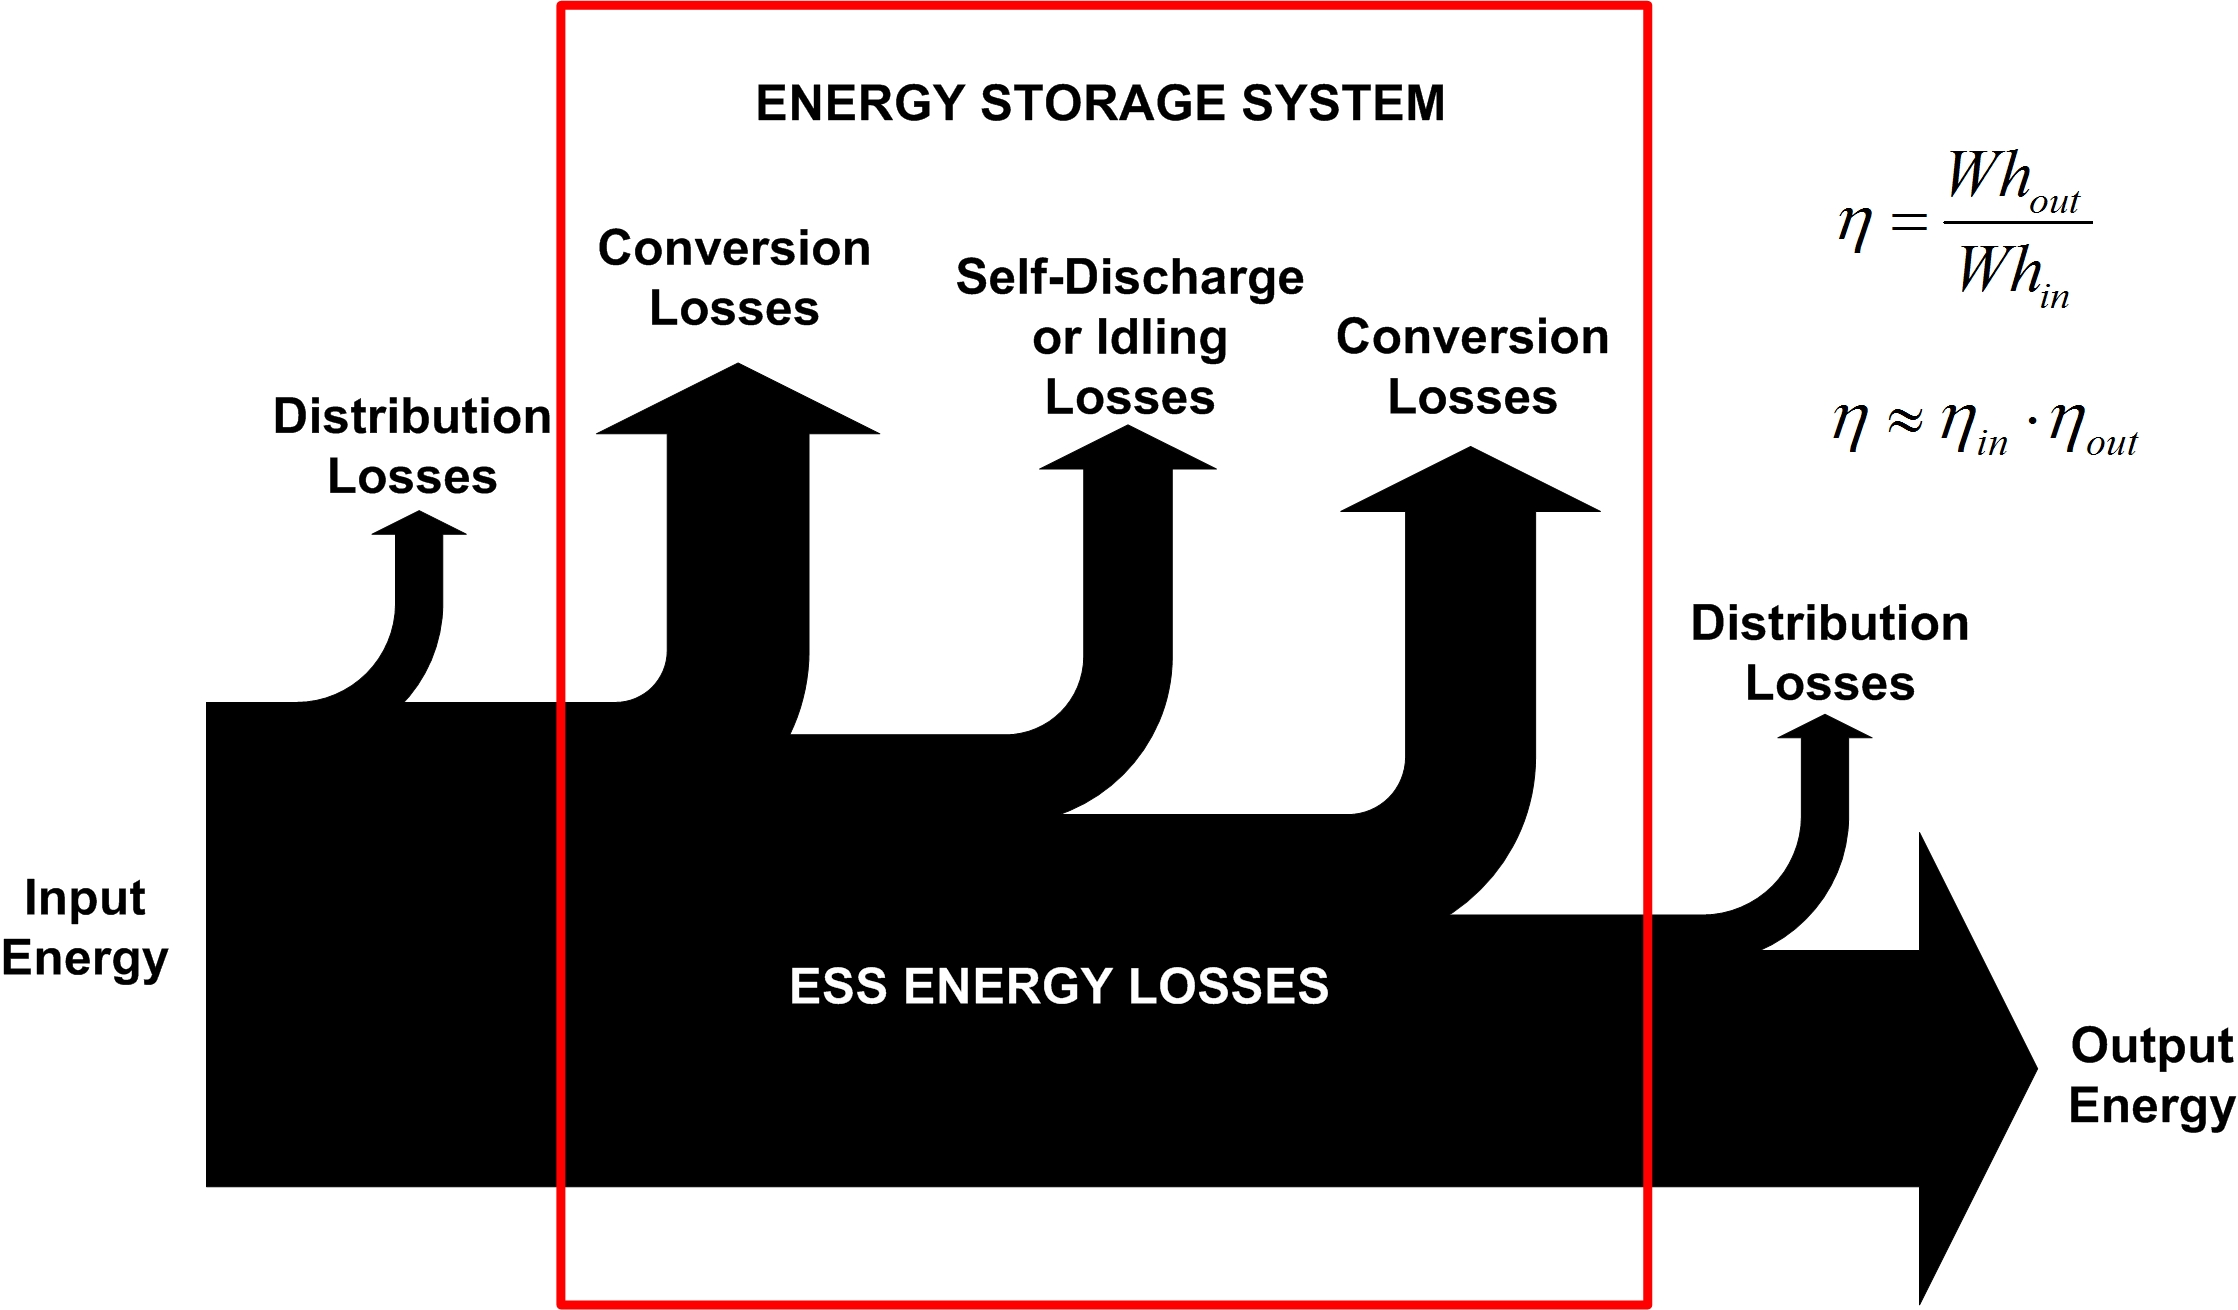 Σε συνέχεια της περιγραφής λειτουργίας ενός συστήµατος αποθήκευσης ενέργειας, στο Σχήµα 6 παρουσιάζεται η αντίστοιχη ροή ενέργειας ή διαφορετικά το διάγραµµα Sankey ενός συστήµατος αποθήκευσης.